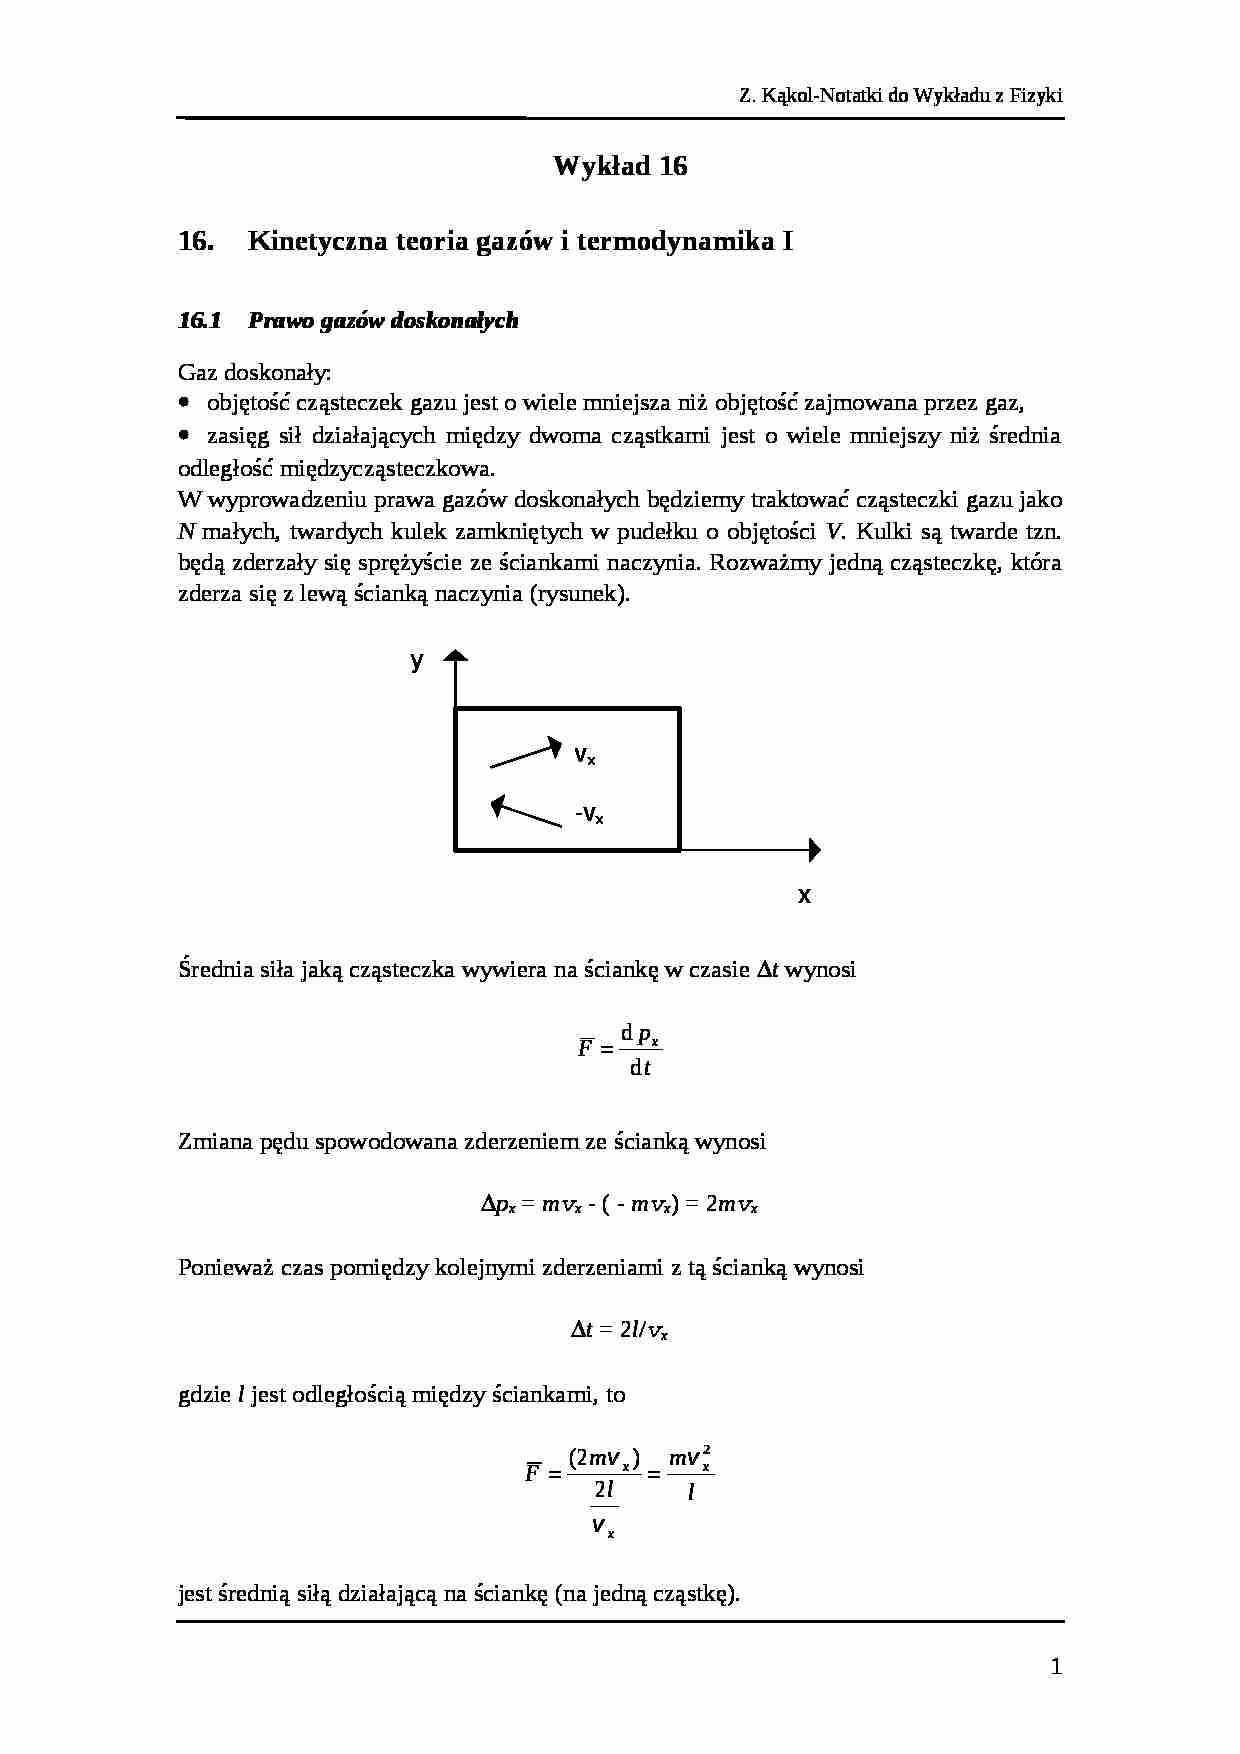 Wykład 16 fizyka - strona 1